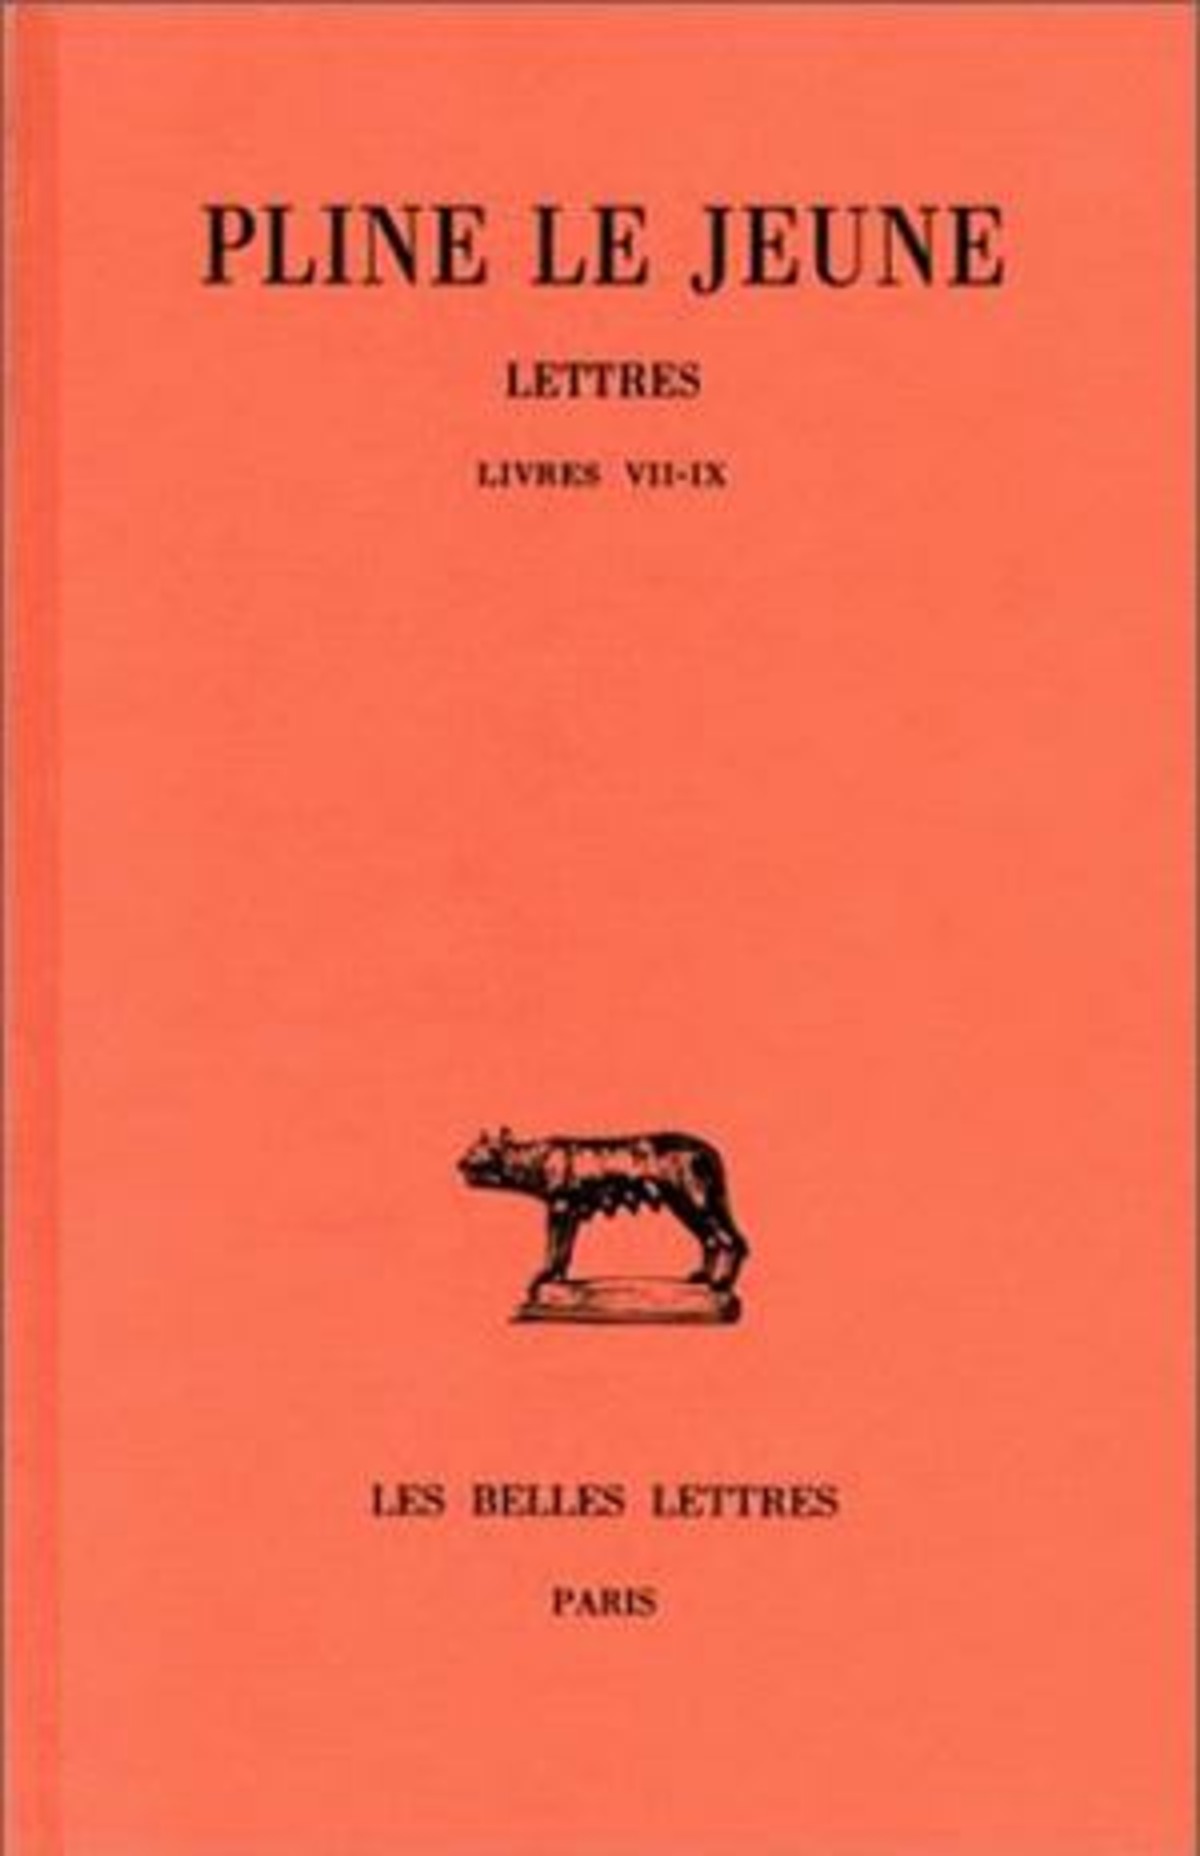 Lettres. Tome III : Livres VII-IX